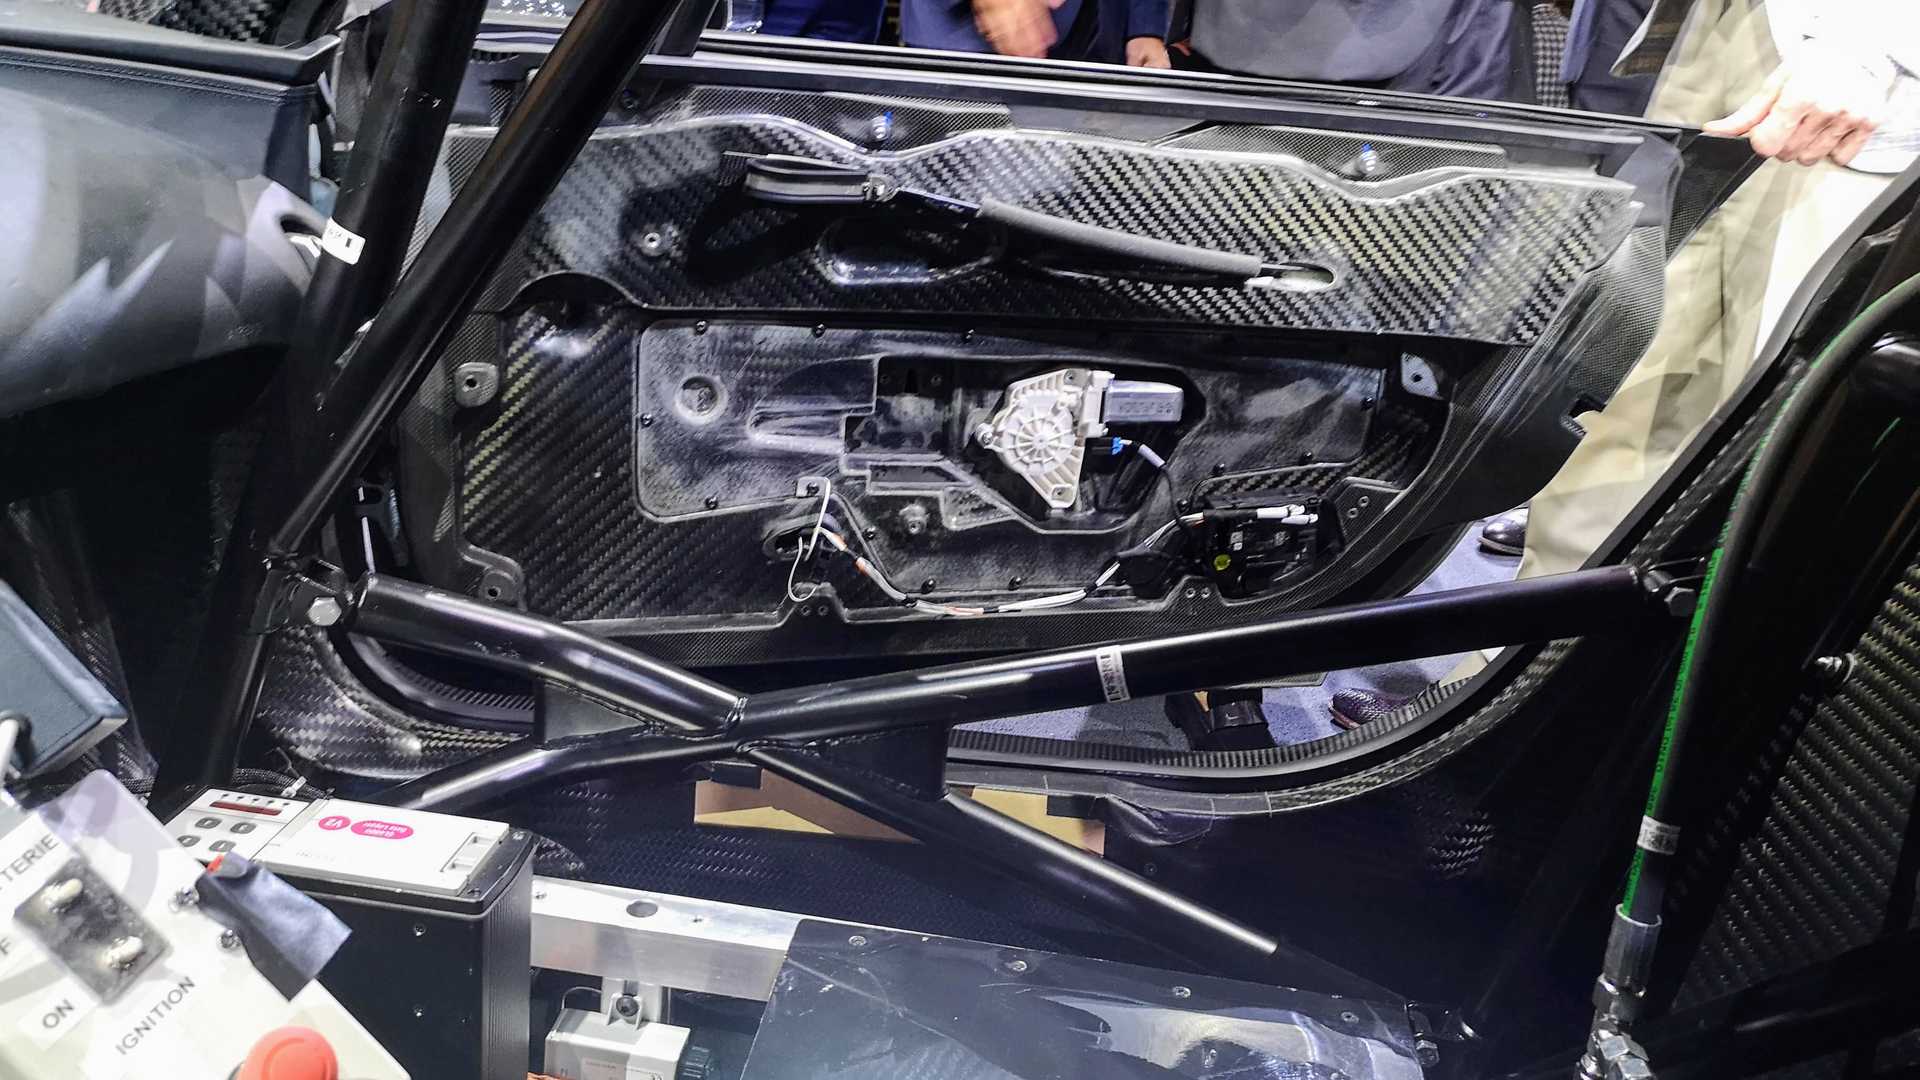 بوجاتي شيرون سوبر سبورت أقوى سيارة في العالم تنطلق رسمياً 24